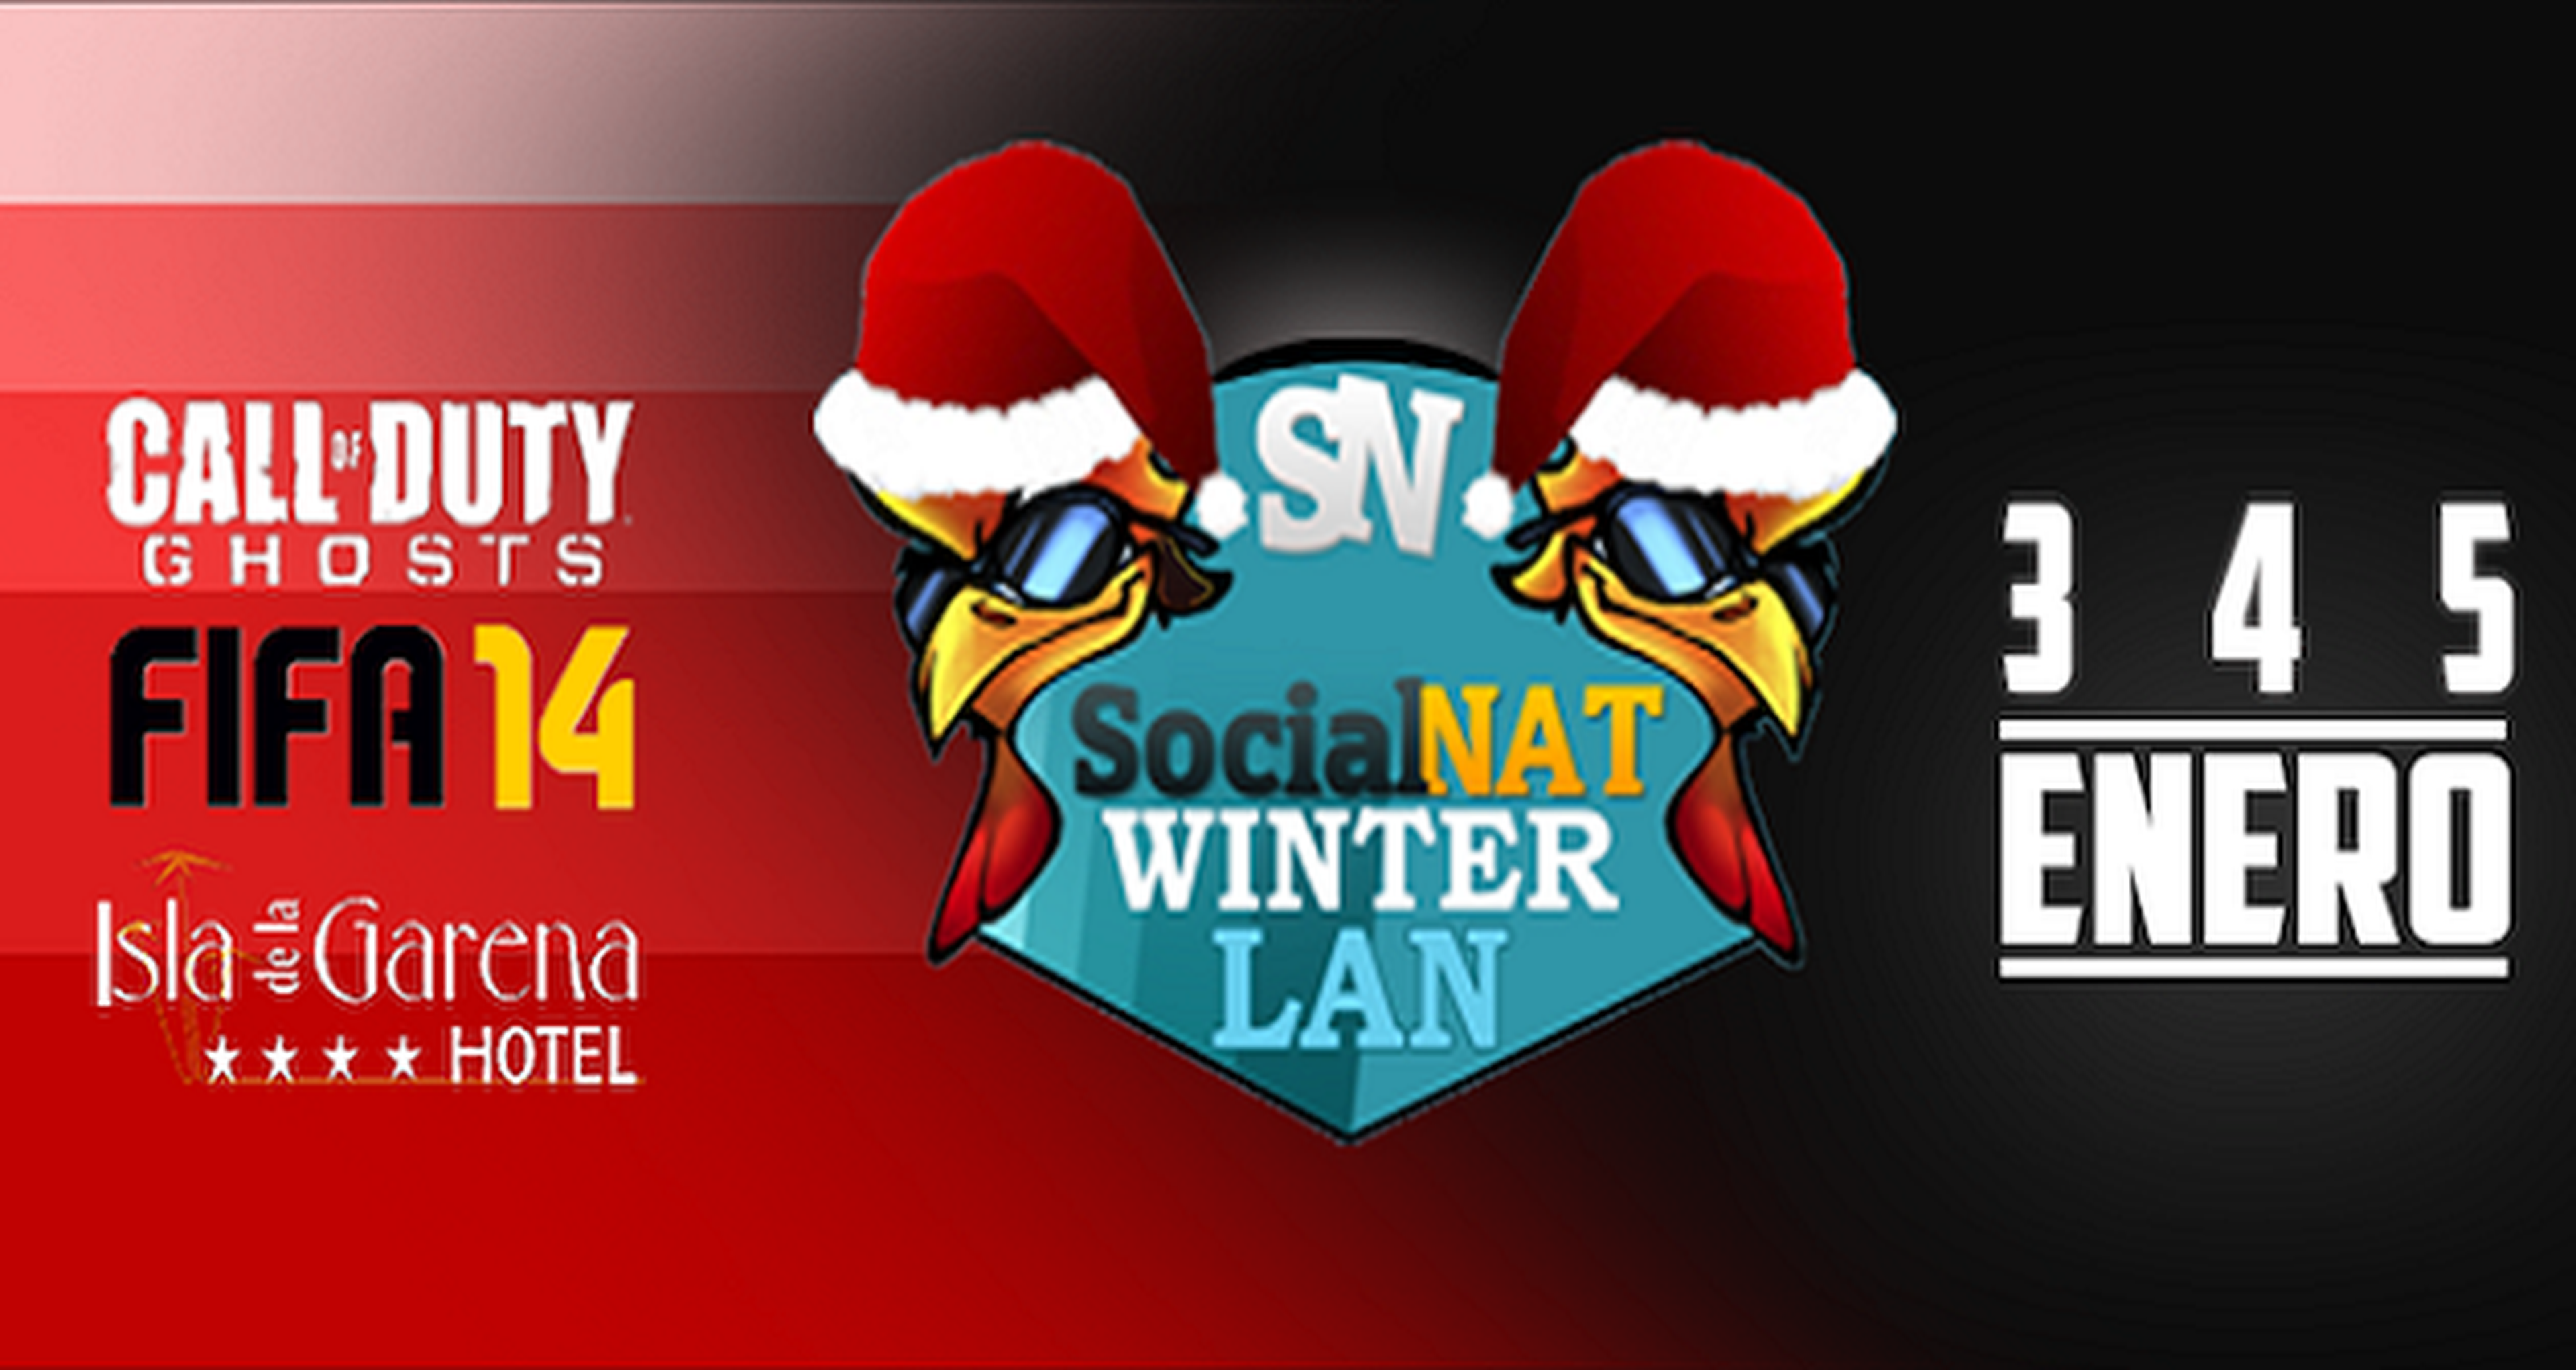 SocialNat celebrará en enero su primera Party Winter Lan